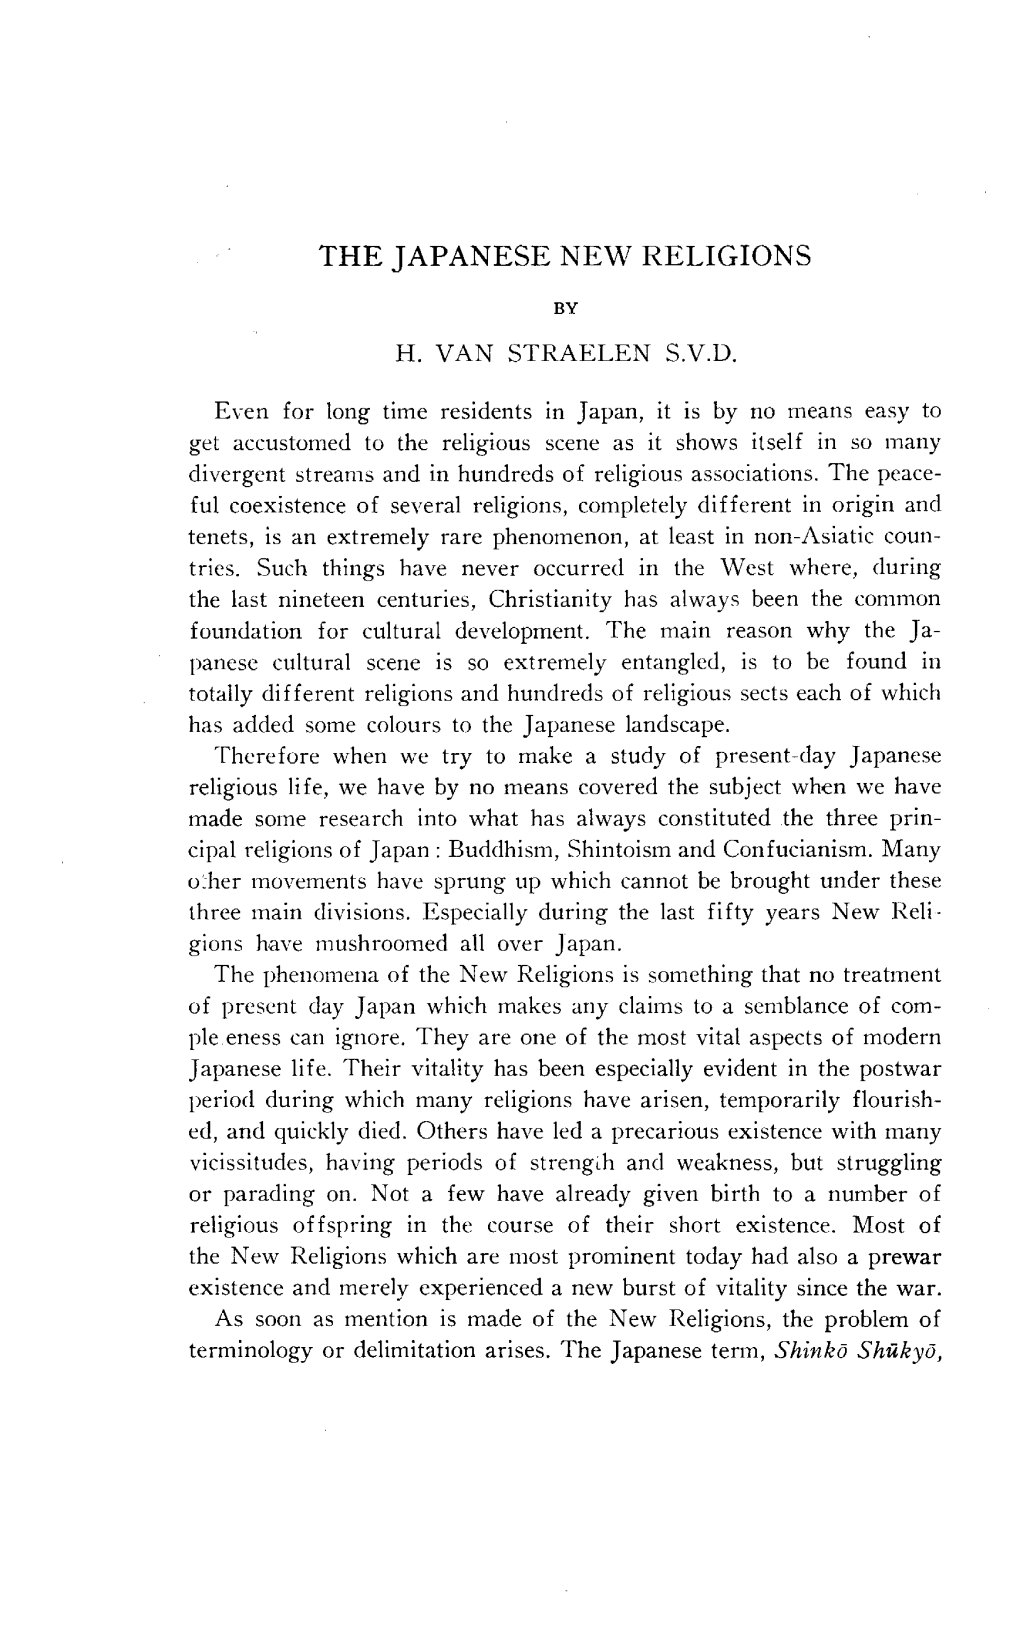 THE JAPANESE NEW RELIGIONS by H. VAN STRAELEN S.V.D. Even